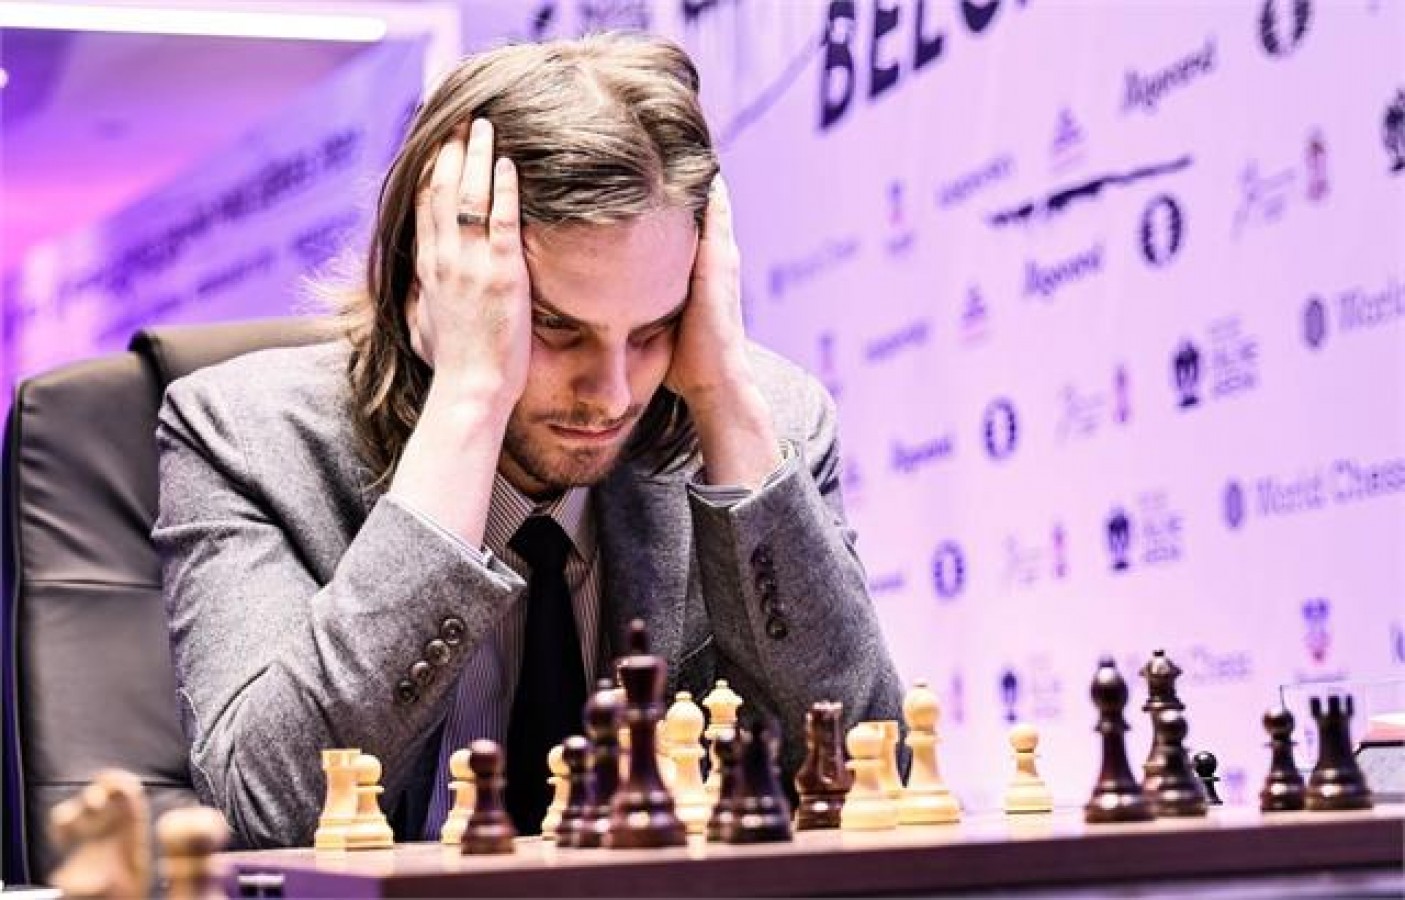 Richard Rapport wins FIDE Belgrade GP 2022 Rapport defeated Dmitry